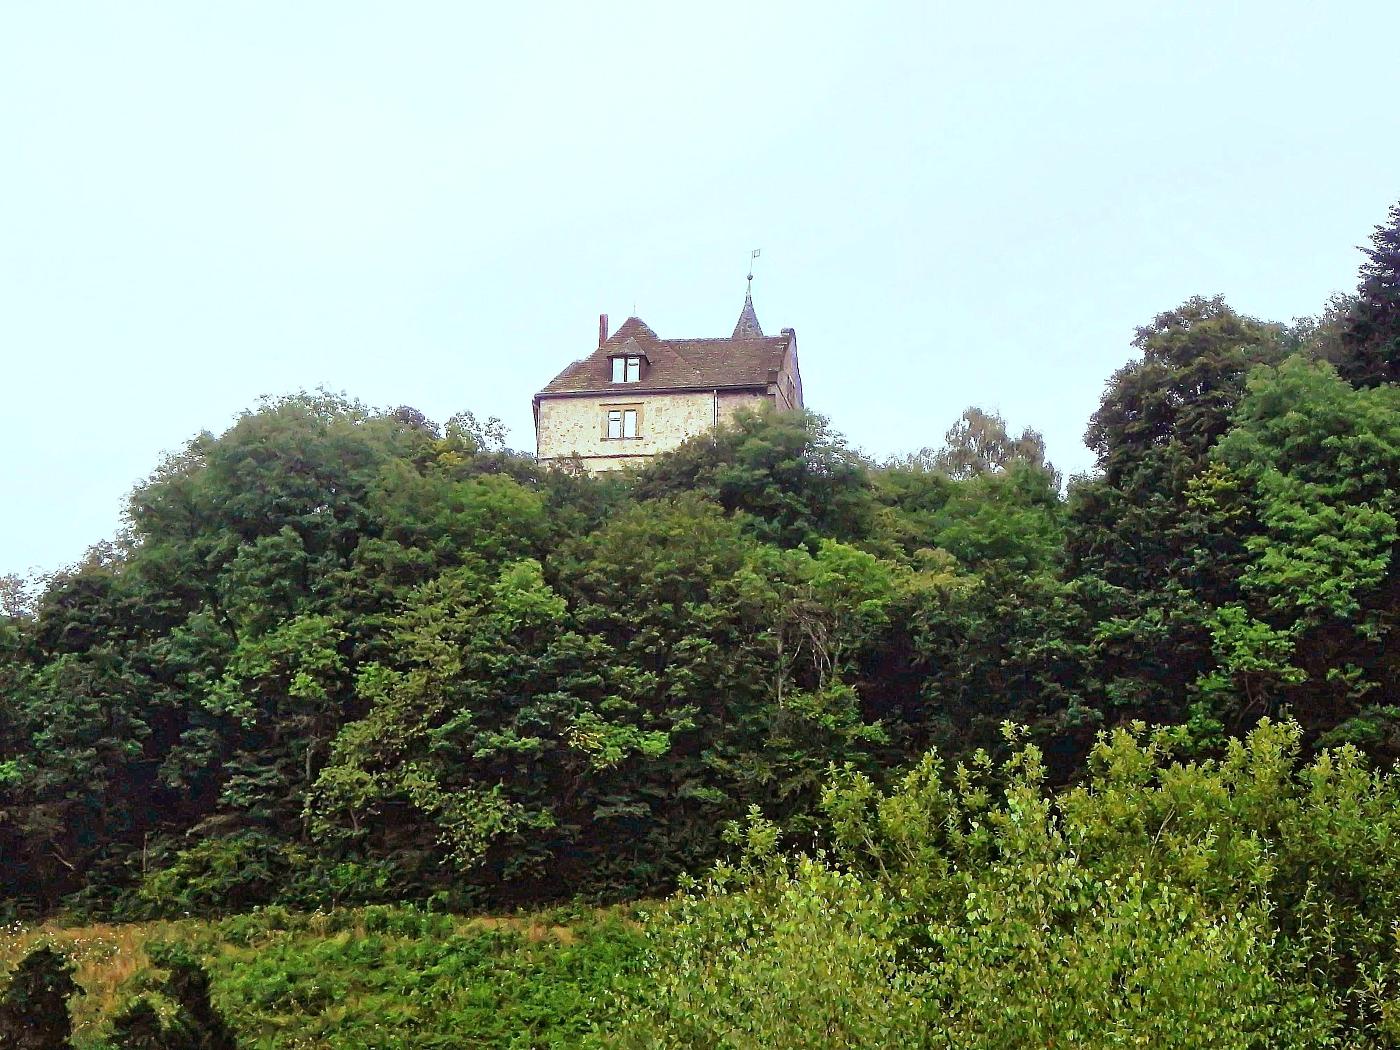 Burg Schwalenberg